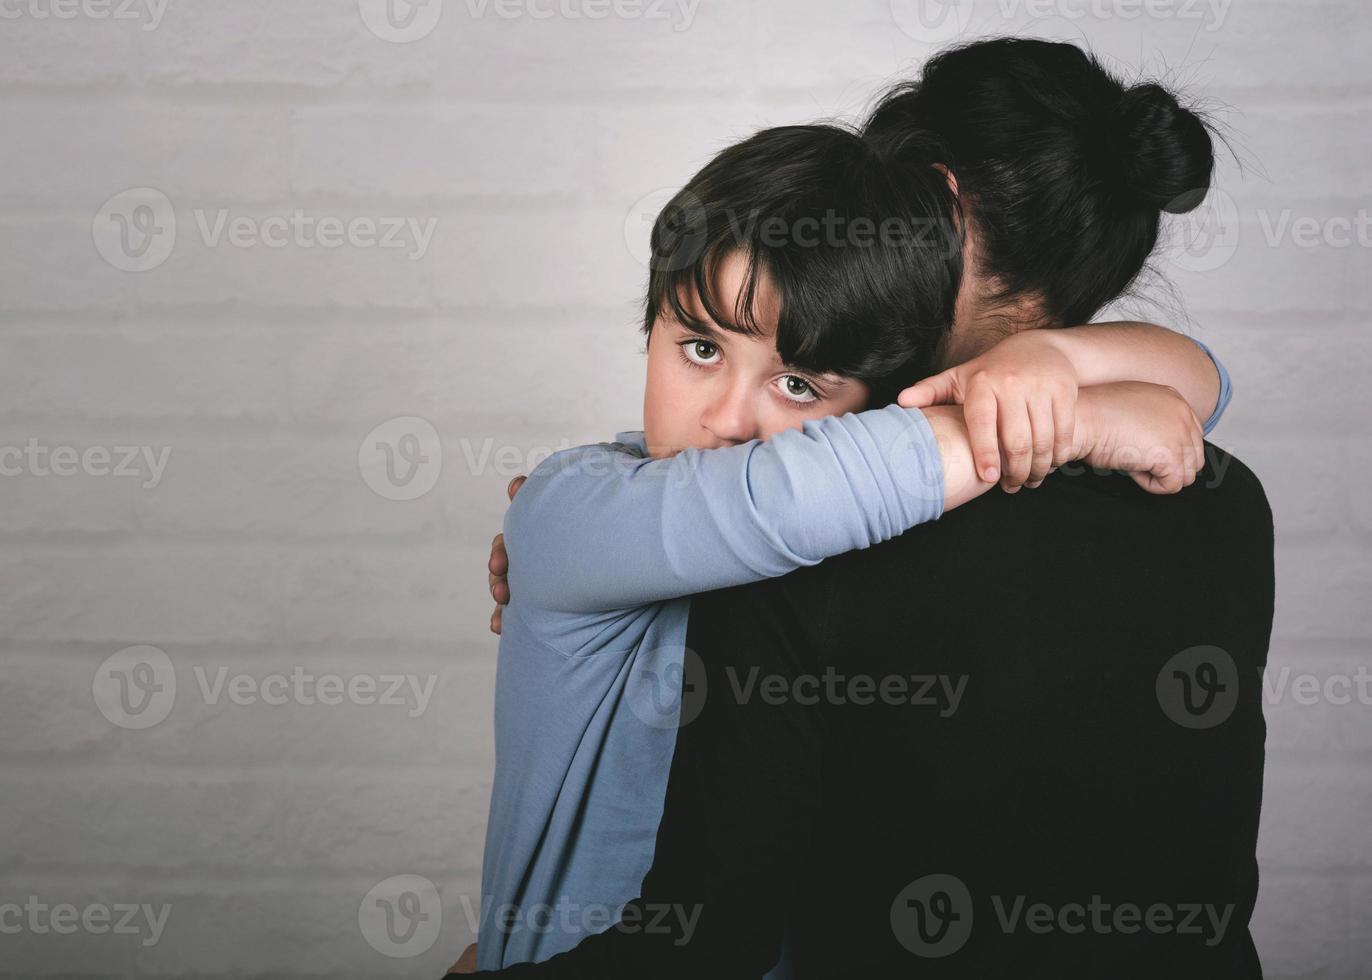 criança triste abraçando sua mãe foto